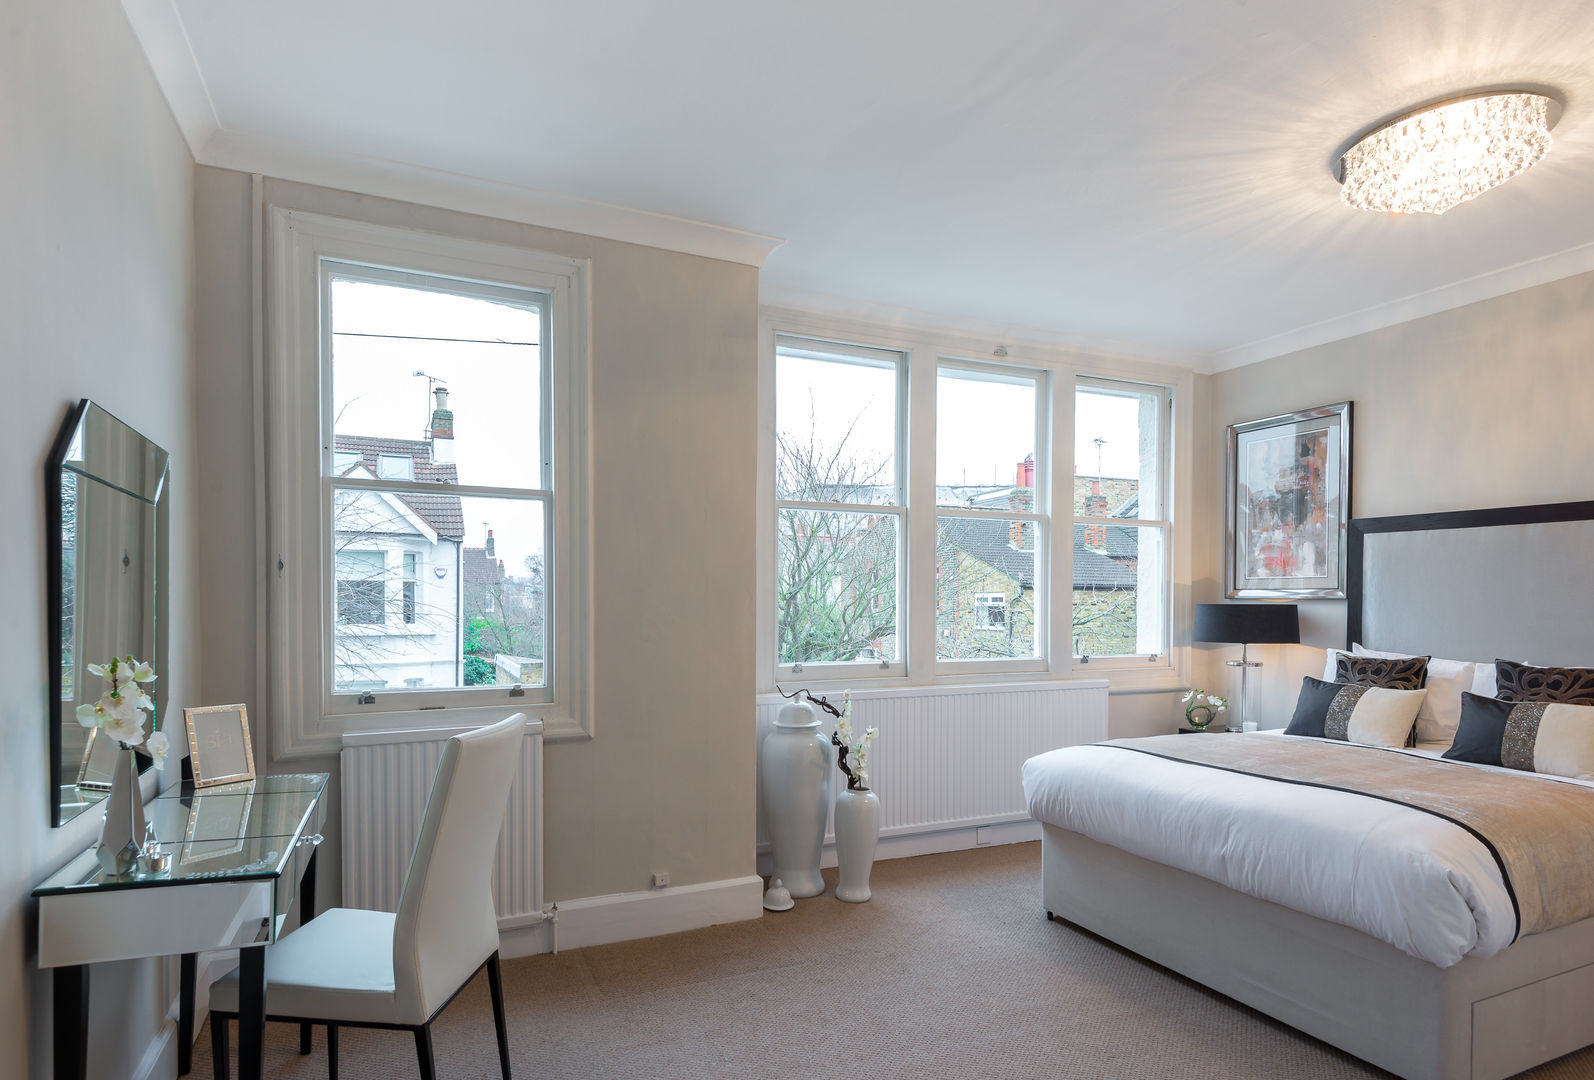 Bedroom 3 In:Style Direct Habitaciones de estilo minimalista